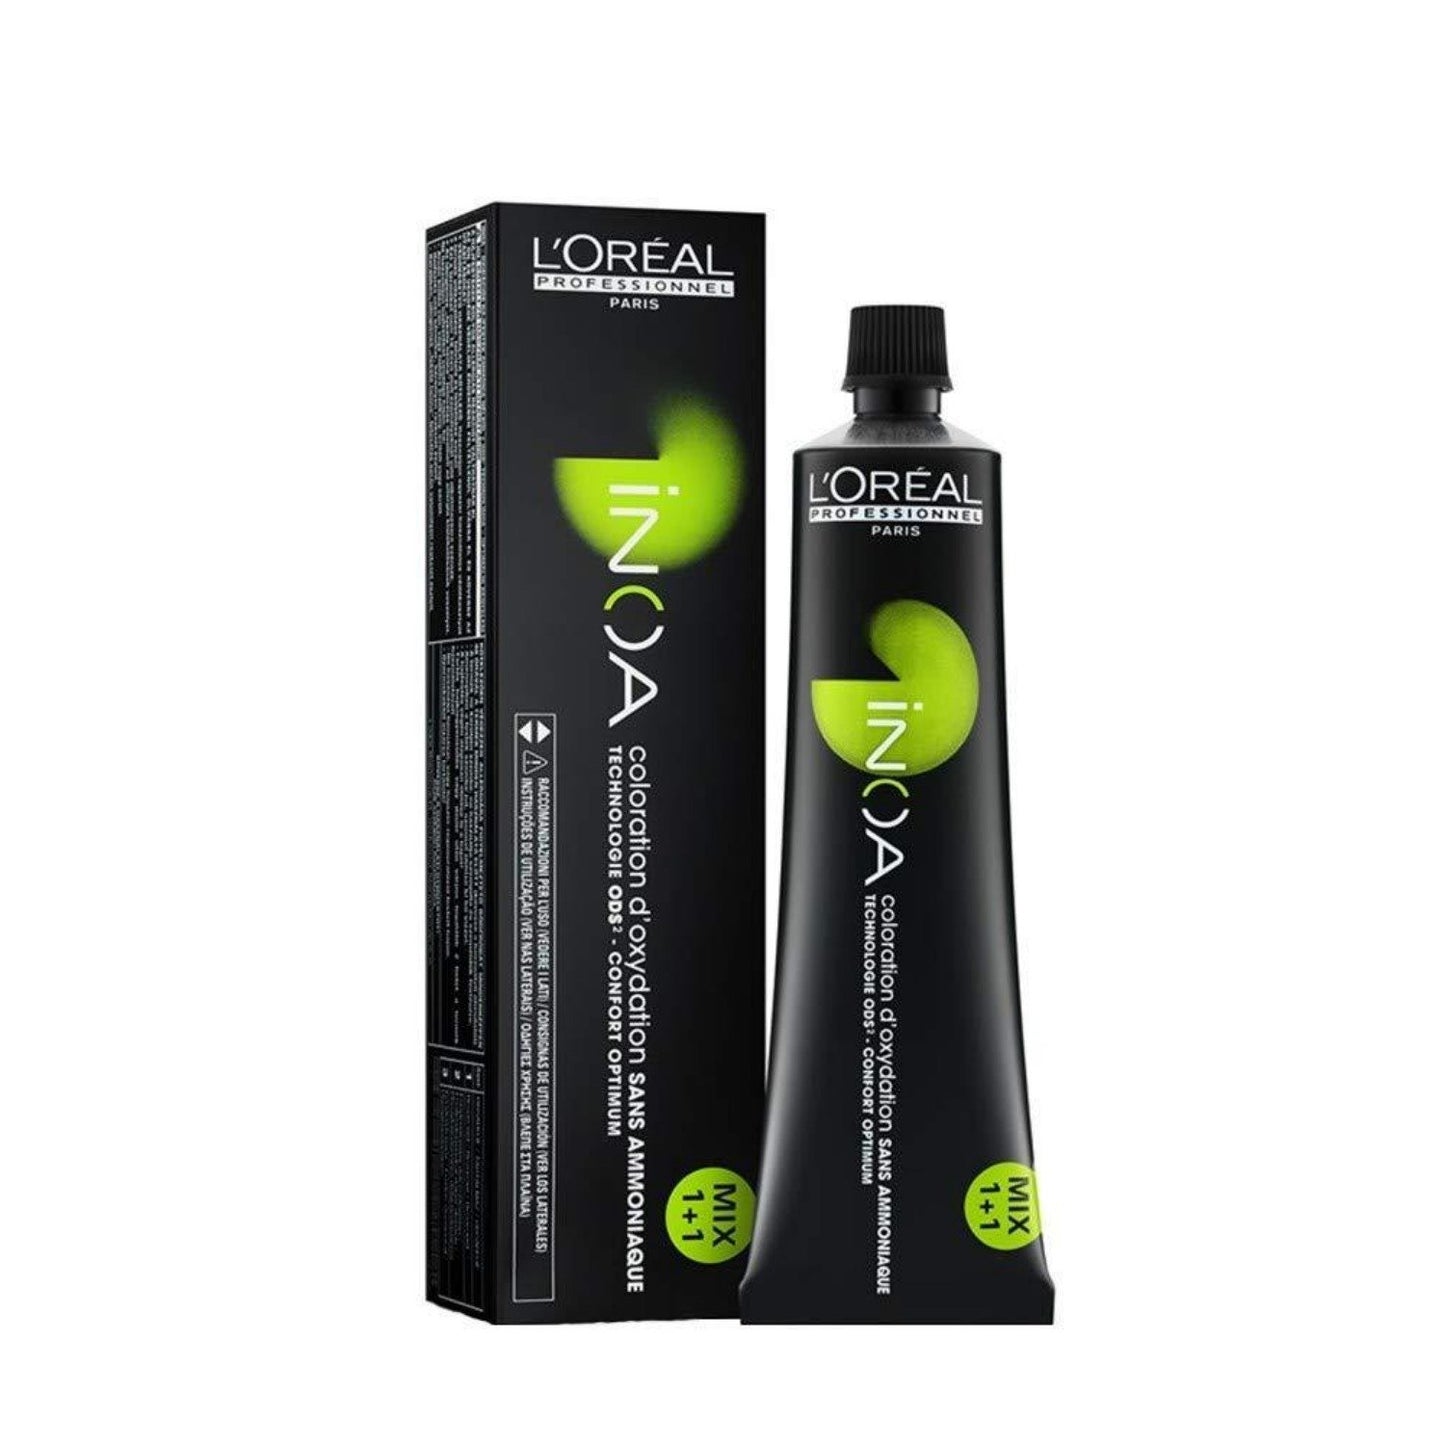 L'Oréal INOA Permanent Hair Colour - 60g, 5.8 Light Mocha Brown (SHOP)